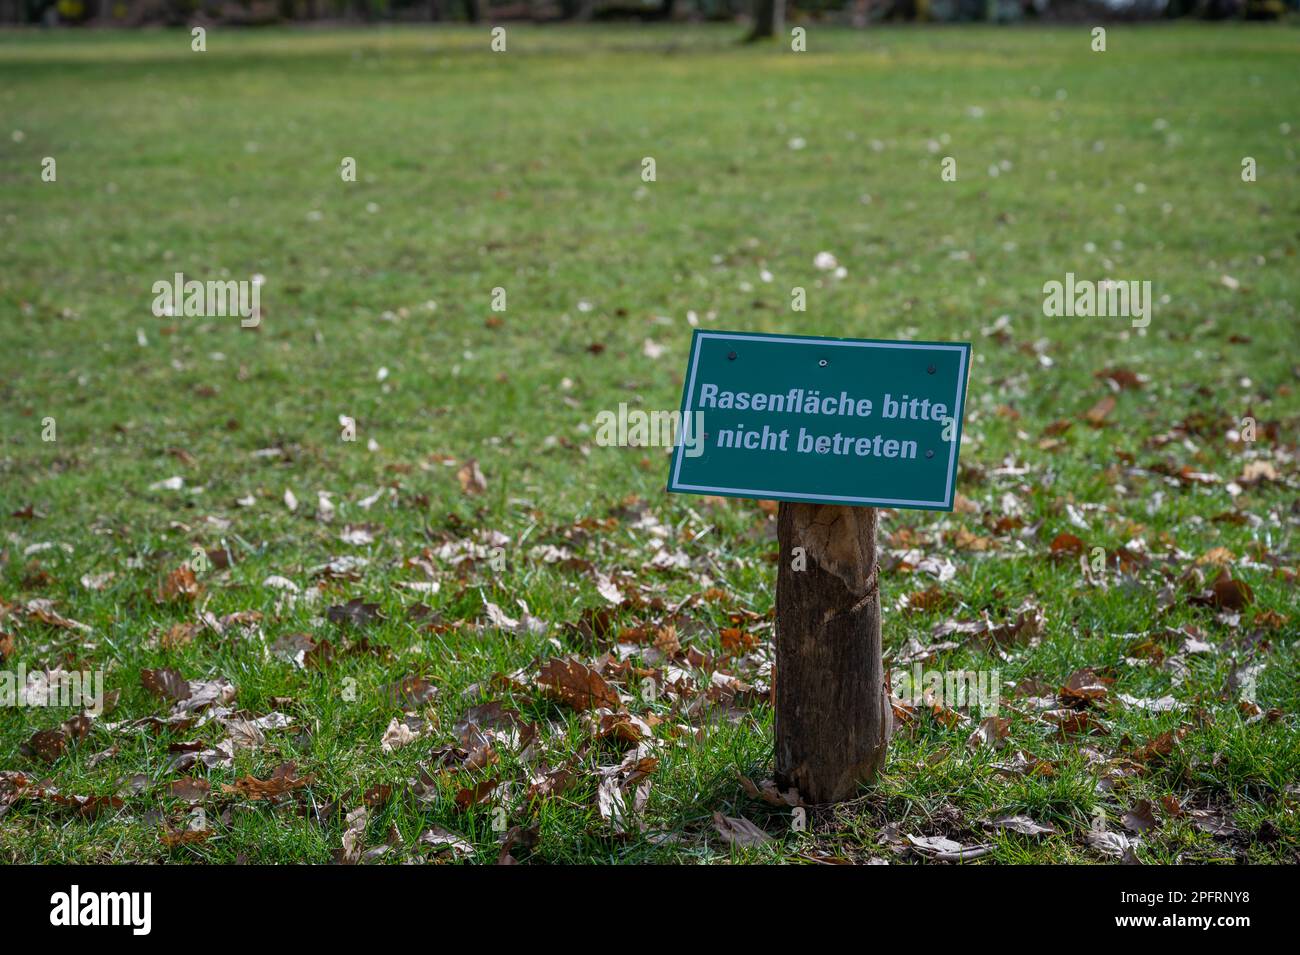 Rasenflaeche bitte nicht betreten, si prega di non camminare sul prato, erba, cartello di divieto tedesco Foto Stock